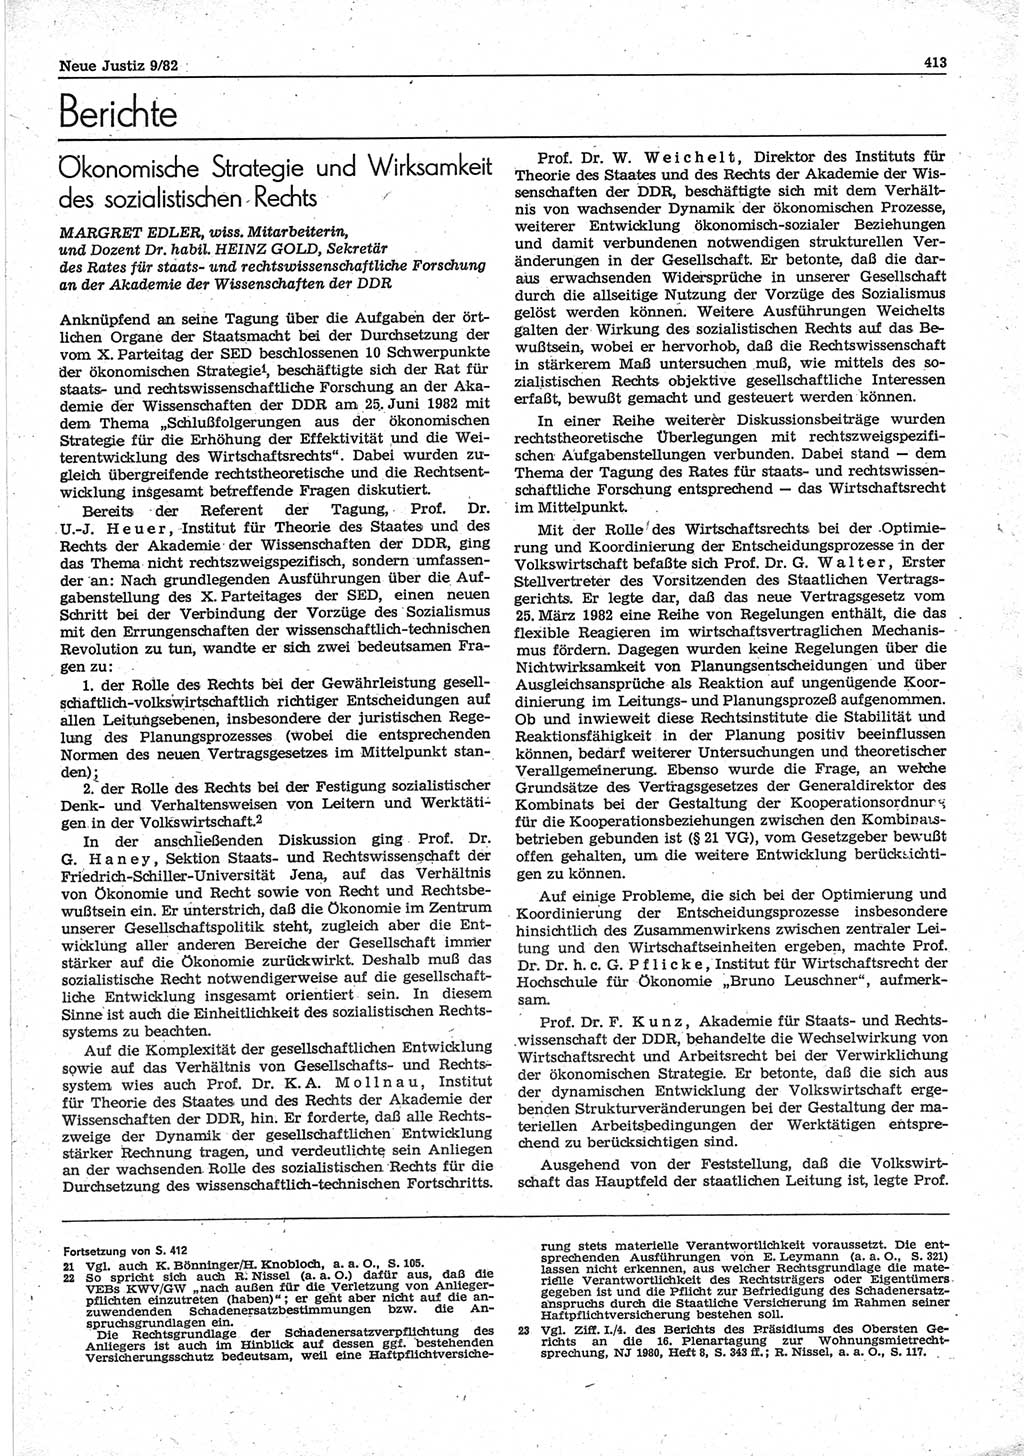 Neue Justiz (NJ), Zeitschrift für sozialistisches Recht und Gesetzlichkeit [Deutsche Demokratische Republik (DDR)], 36. Jahrgang 1982, Seite 413 (NJ DDR 1982, S. 413)